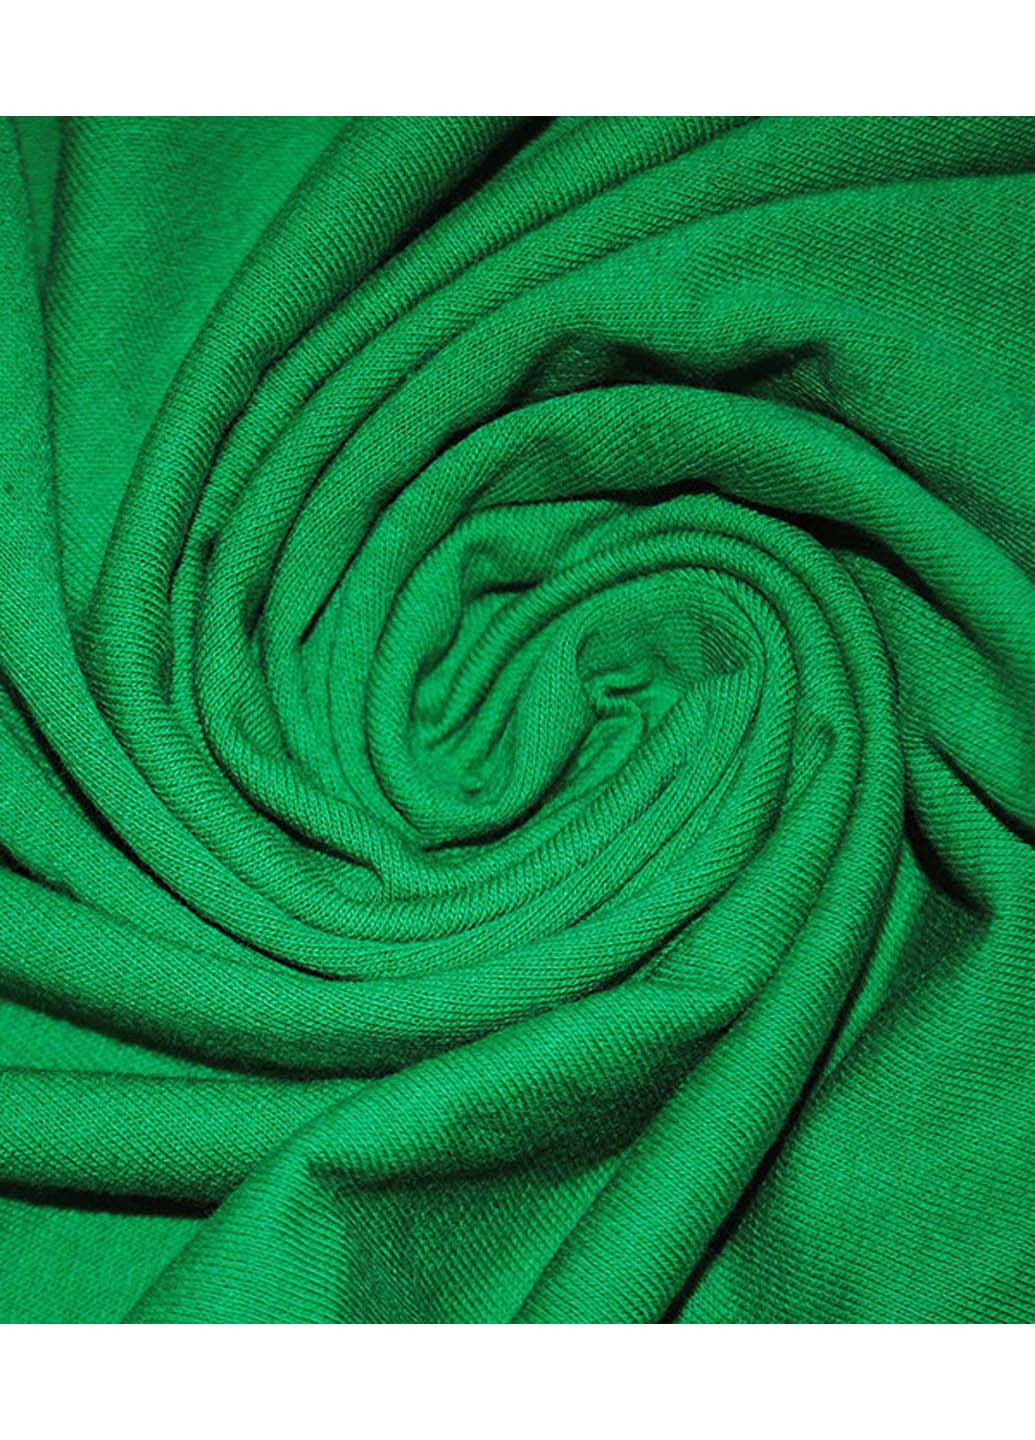 Темно-зелена футболка Fruit of the Loom